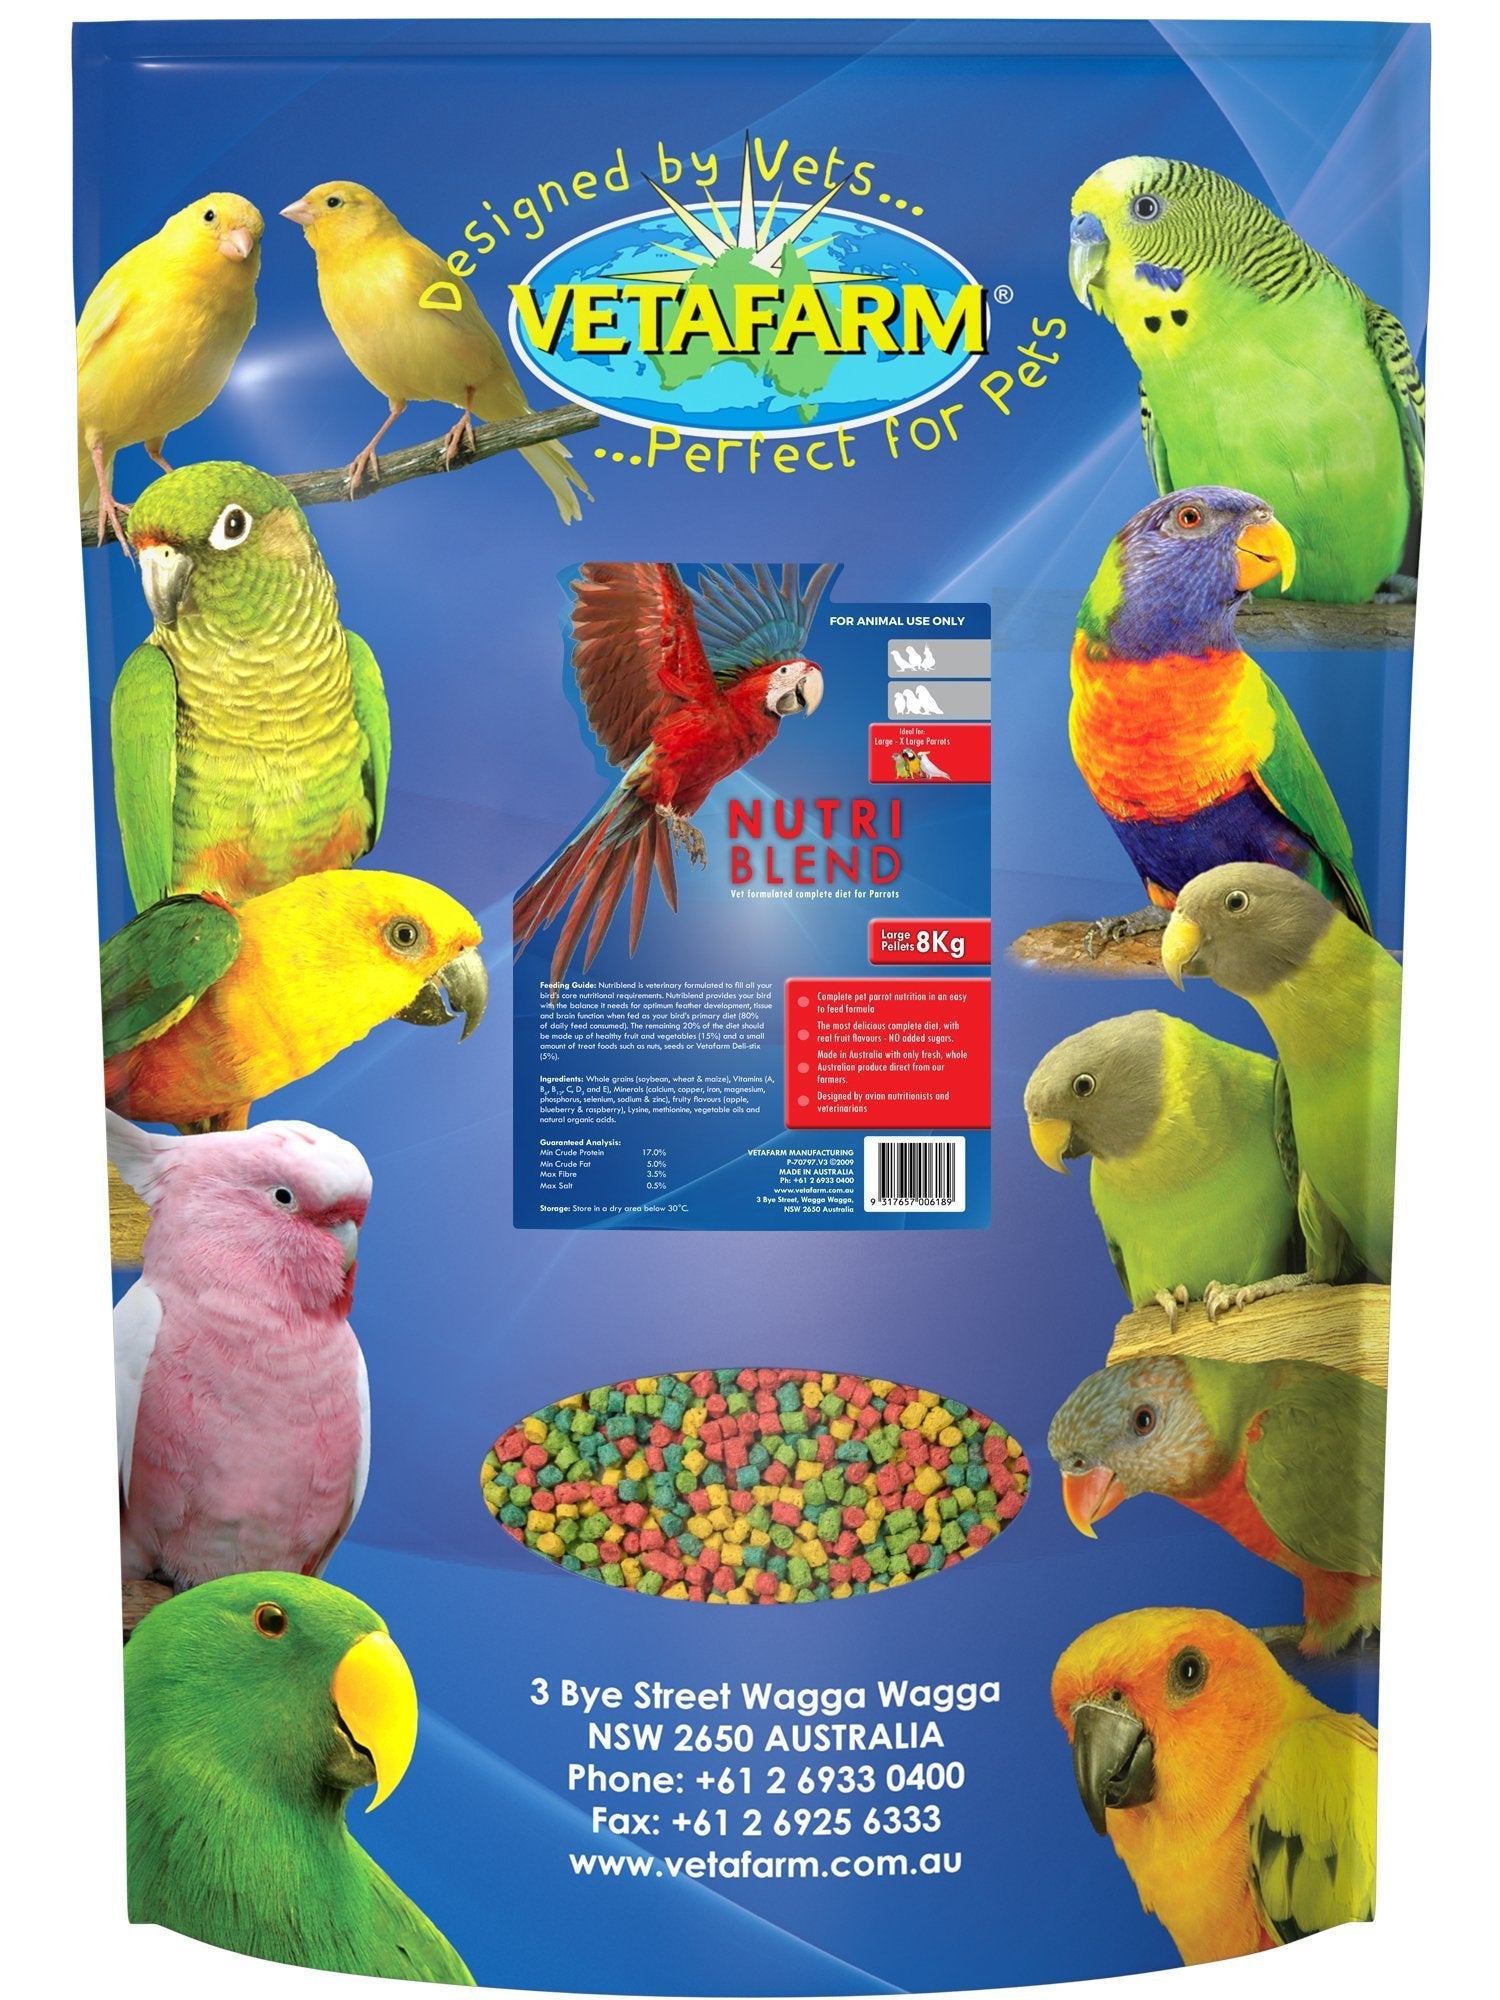 Vetafarm Nutriblend Large Pellets - Woonona Petfood & Produce